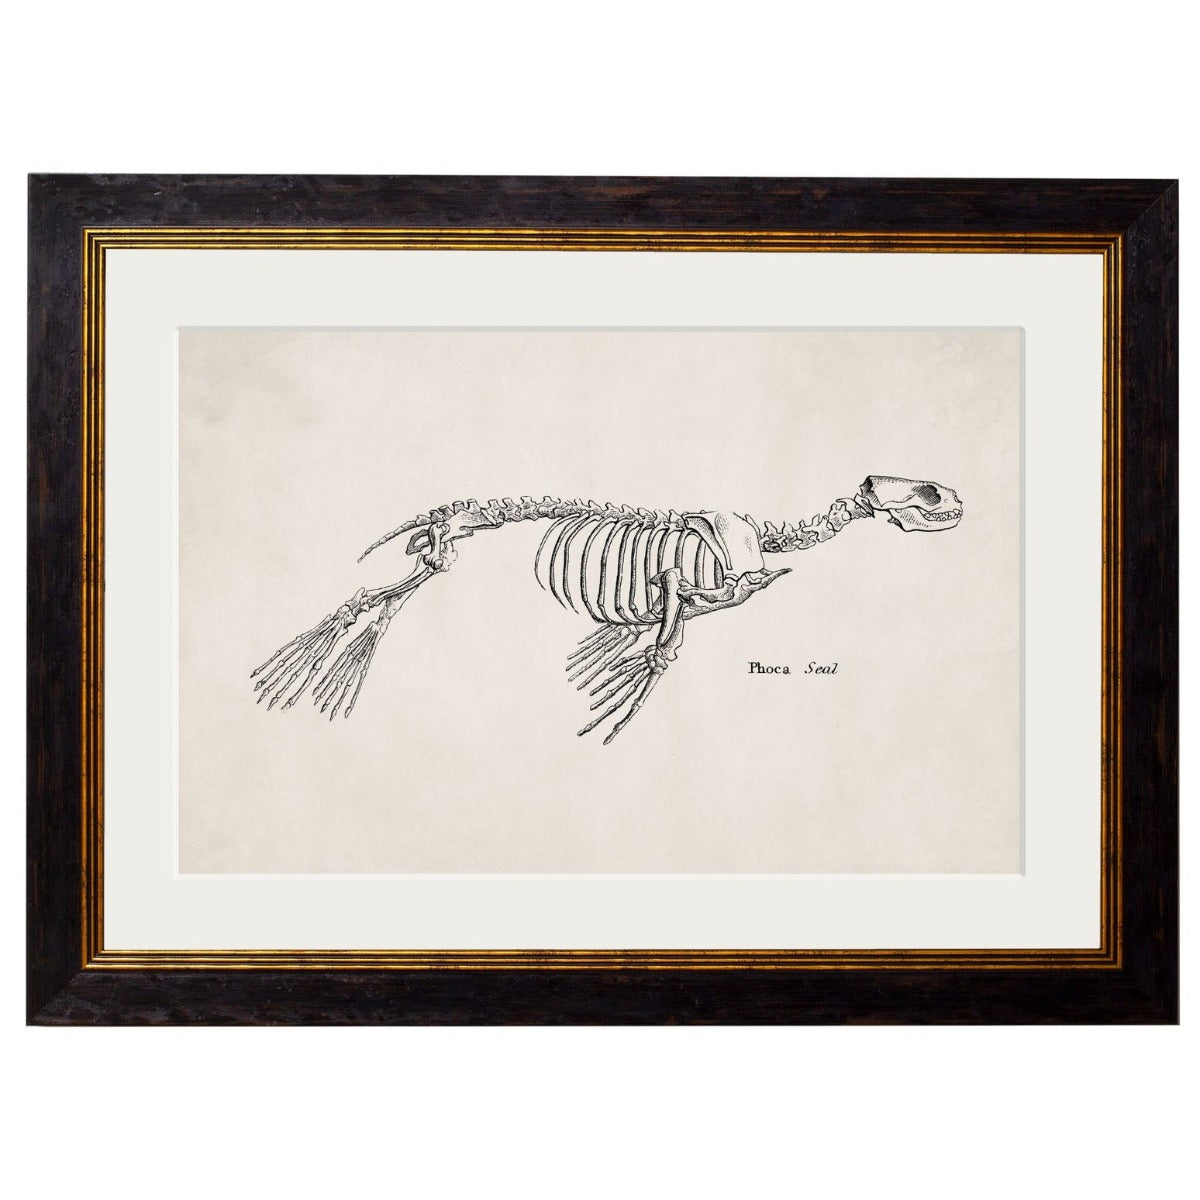 1870  Anatomical Skeletons Framed Print